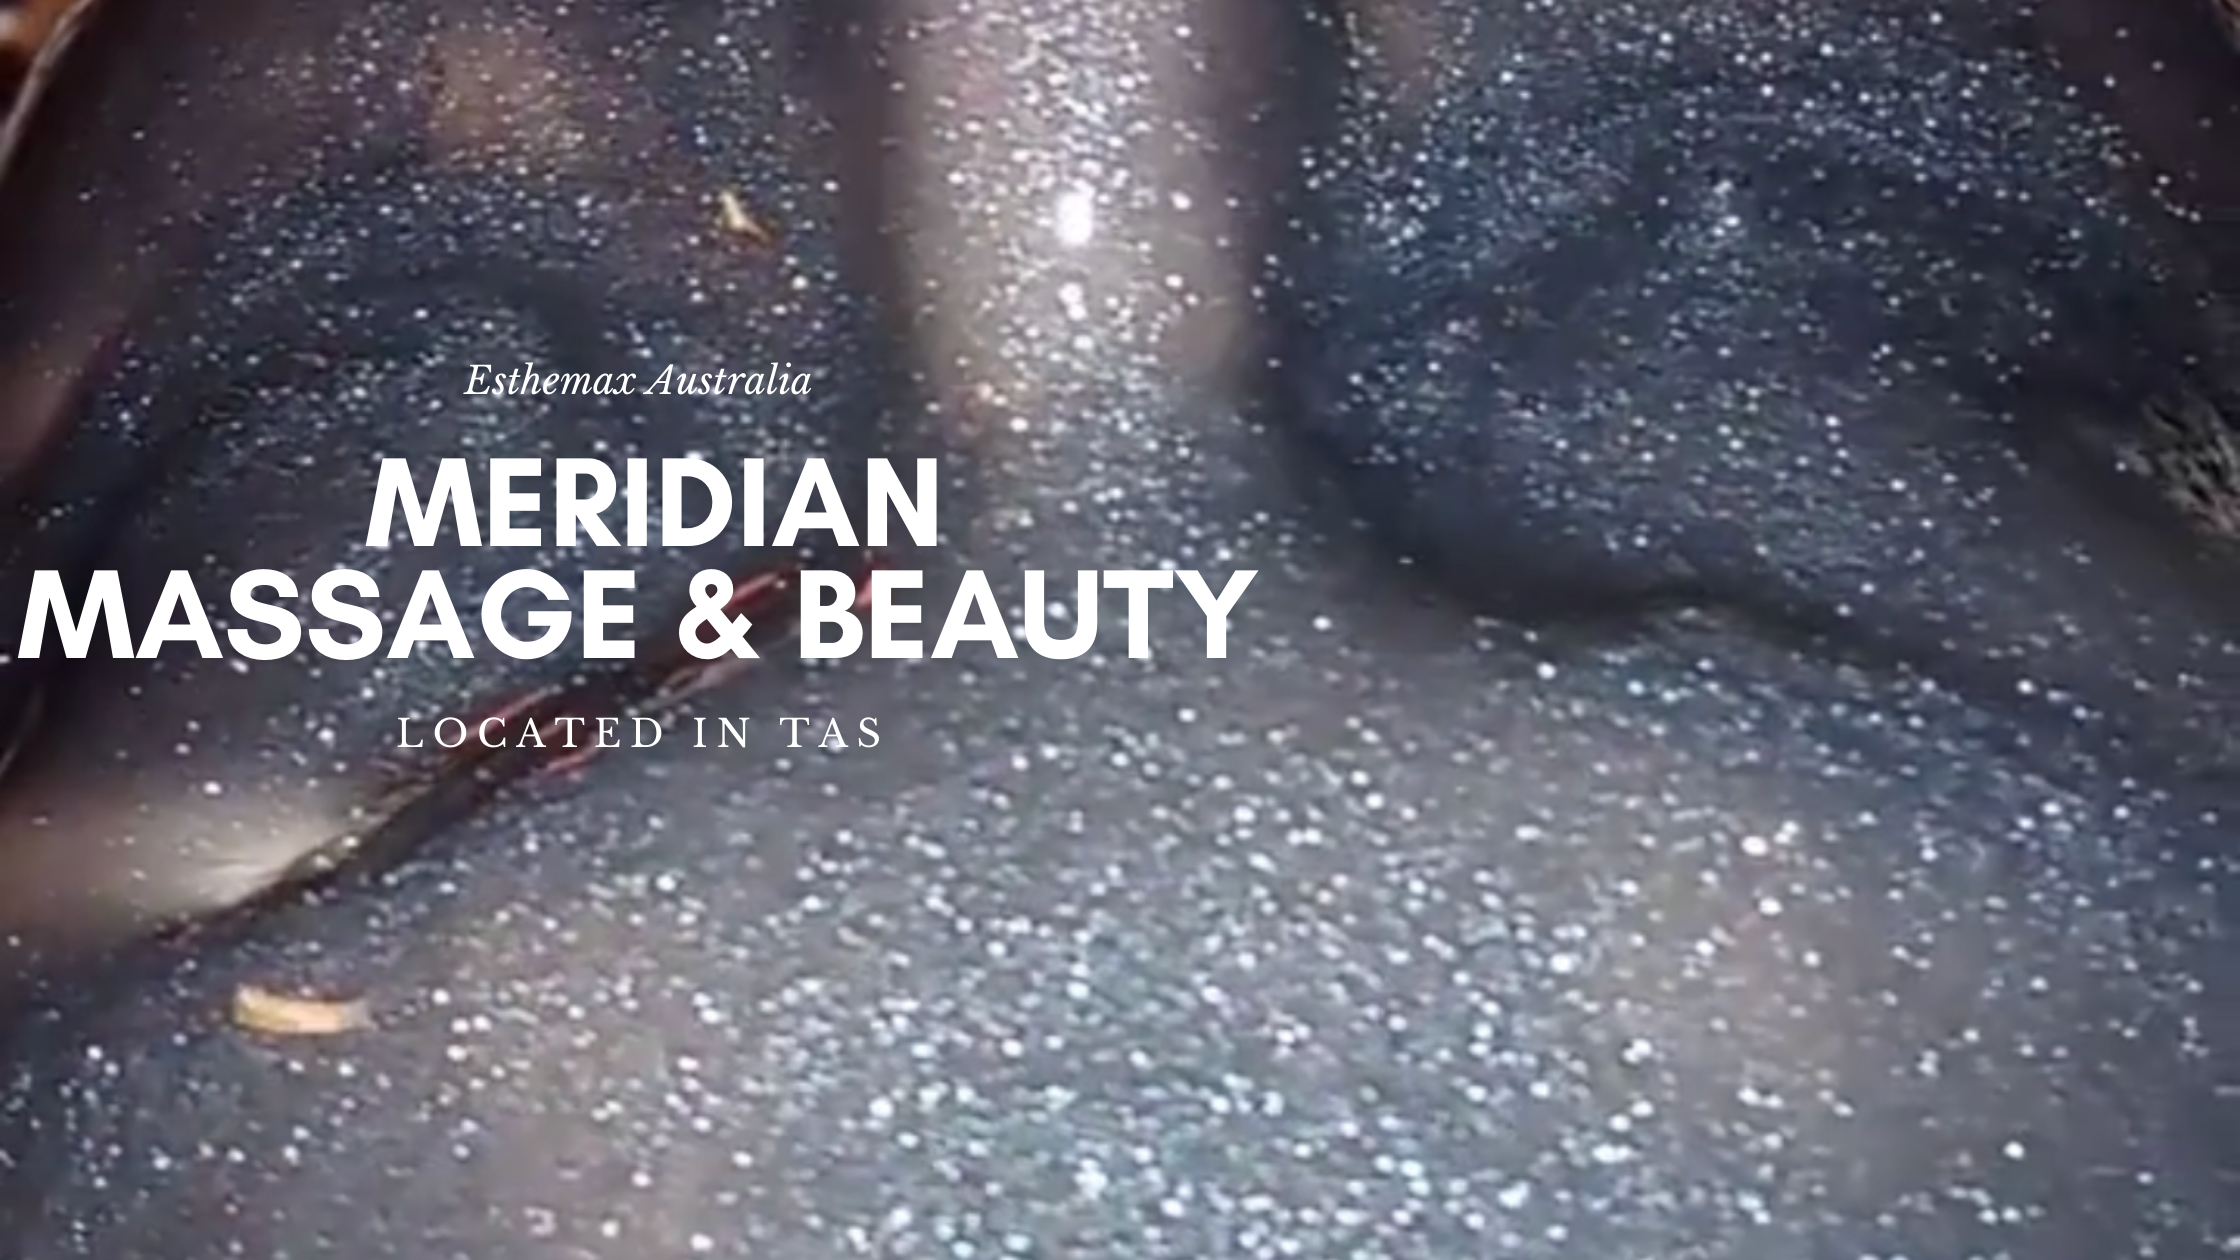 Australian Beauty Salon Feature: Meridian Massage & Beauty Ulverstone, TAS